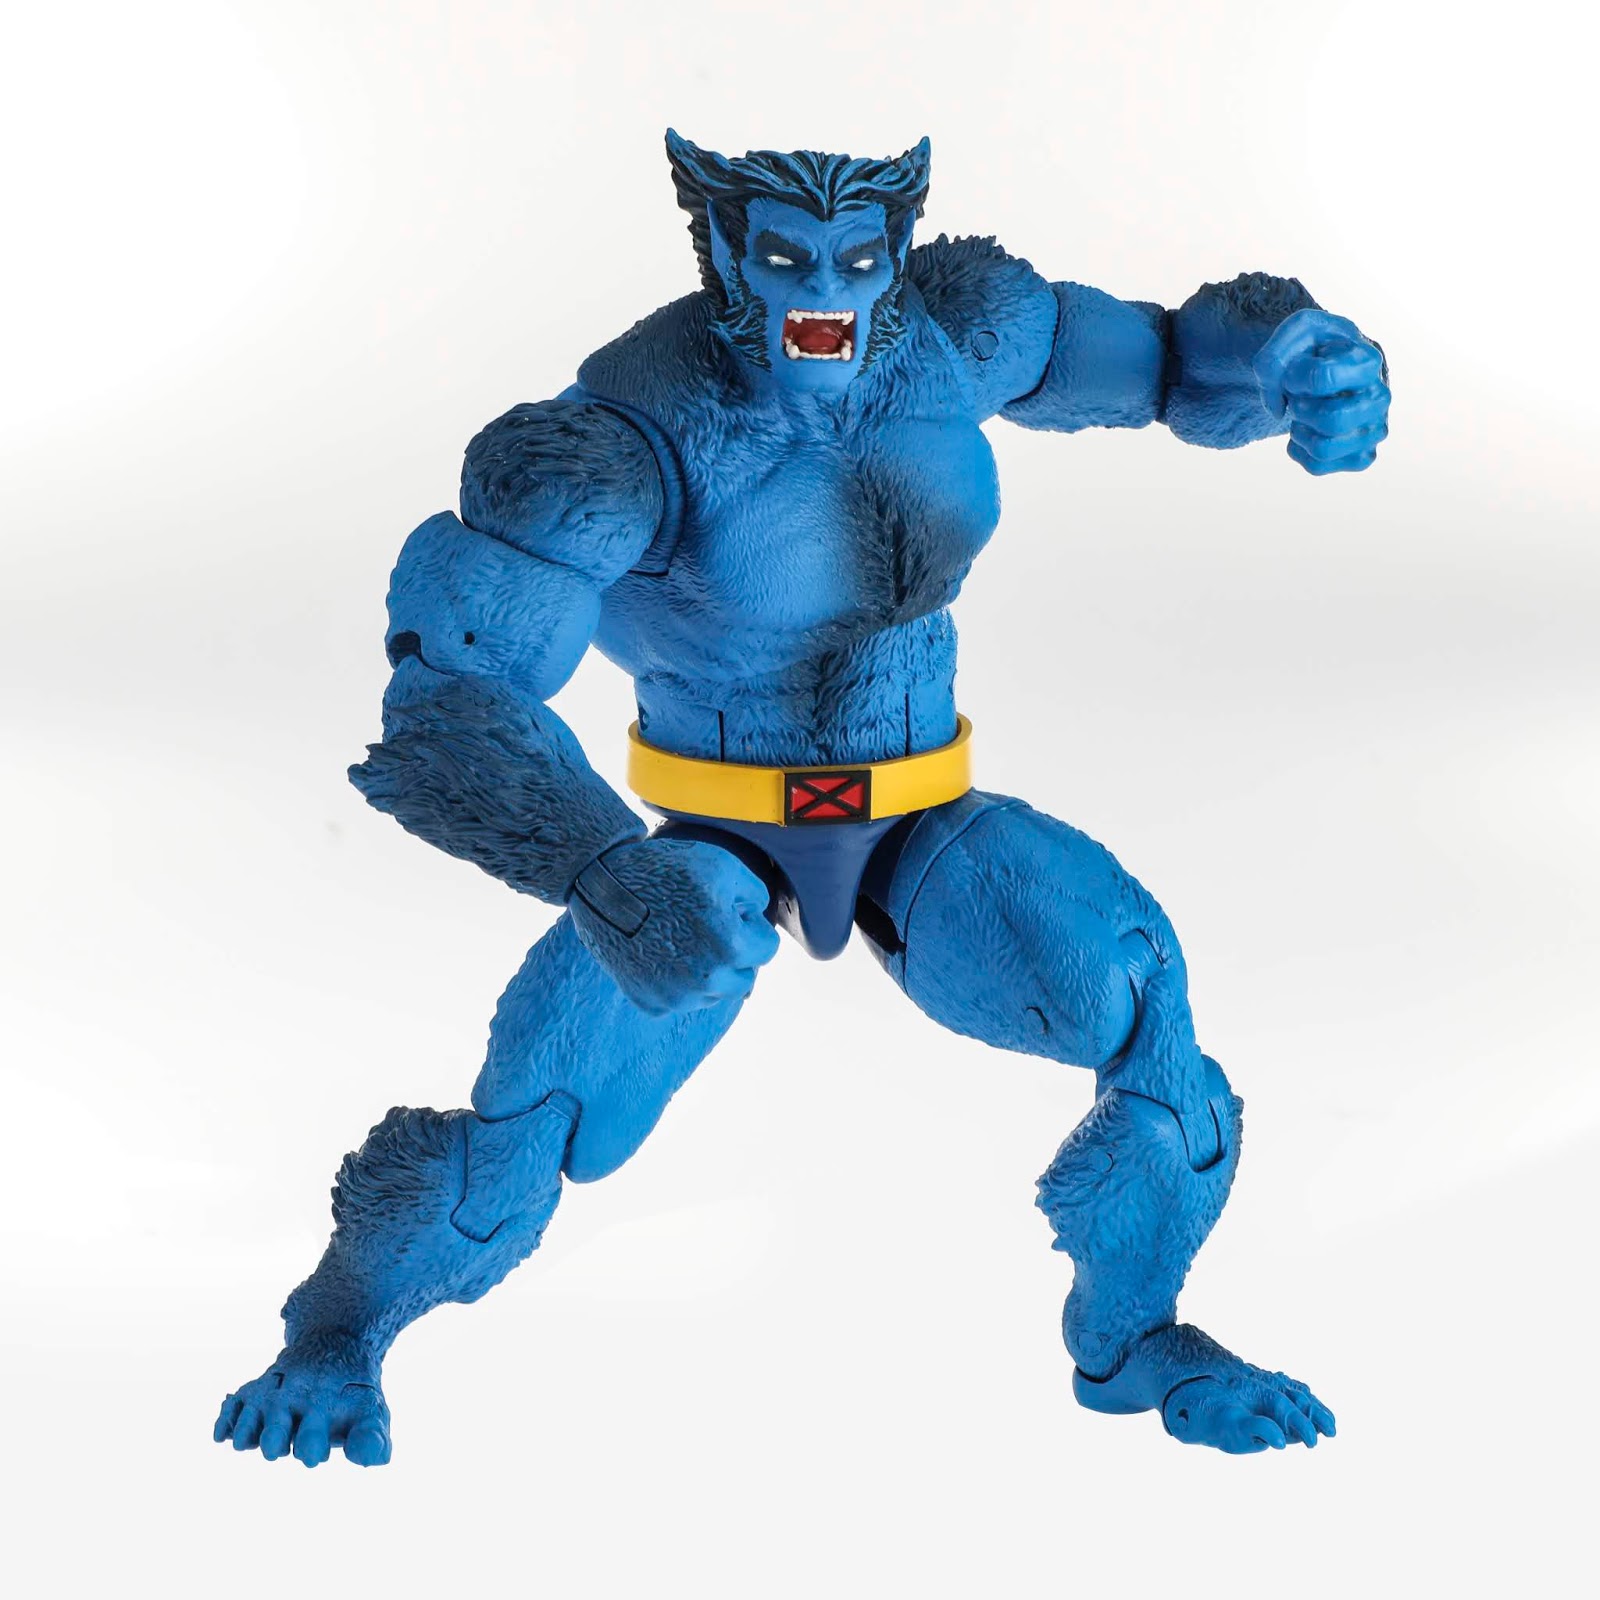 Marvel Legends Series 6-inch Beast Figure (X-Men wave)